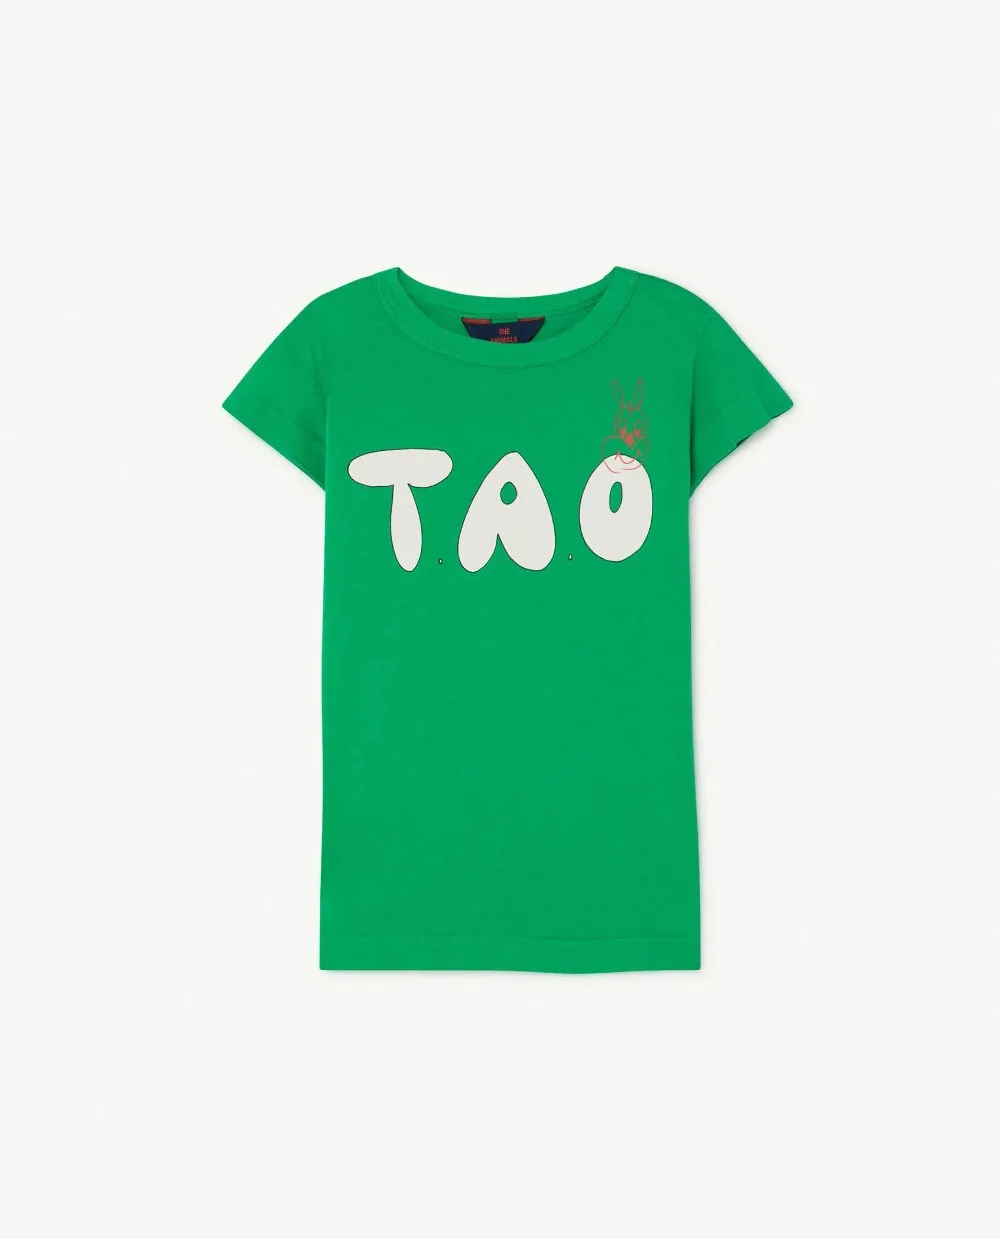 Детская футболка Лето StRafina Тао для мальчиков и девочек футболка с надписью короткий рукав футболки майка детская одежда